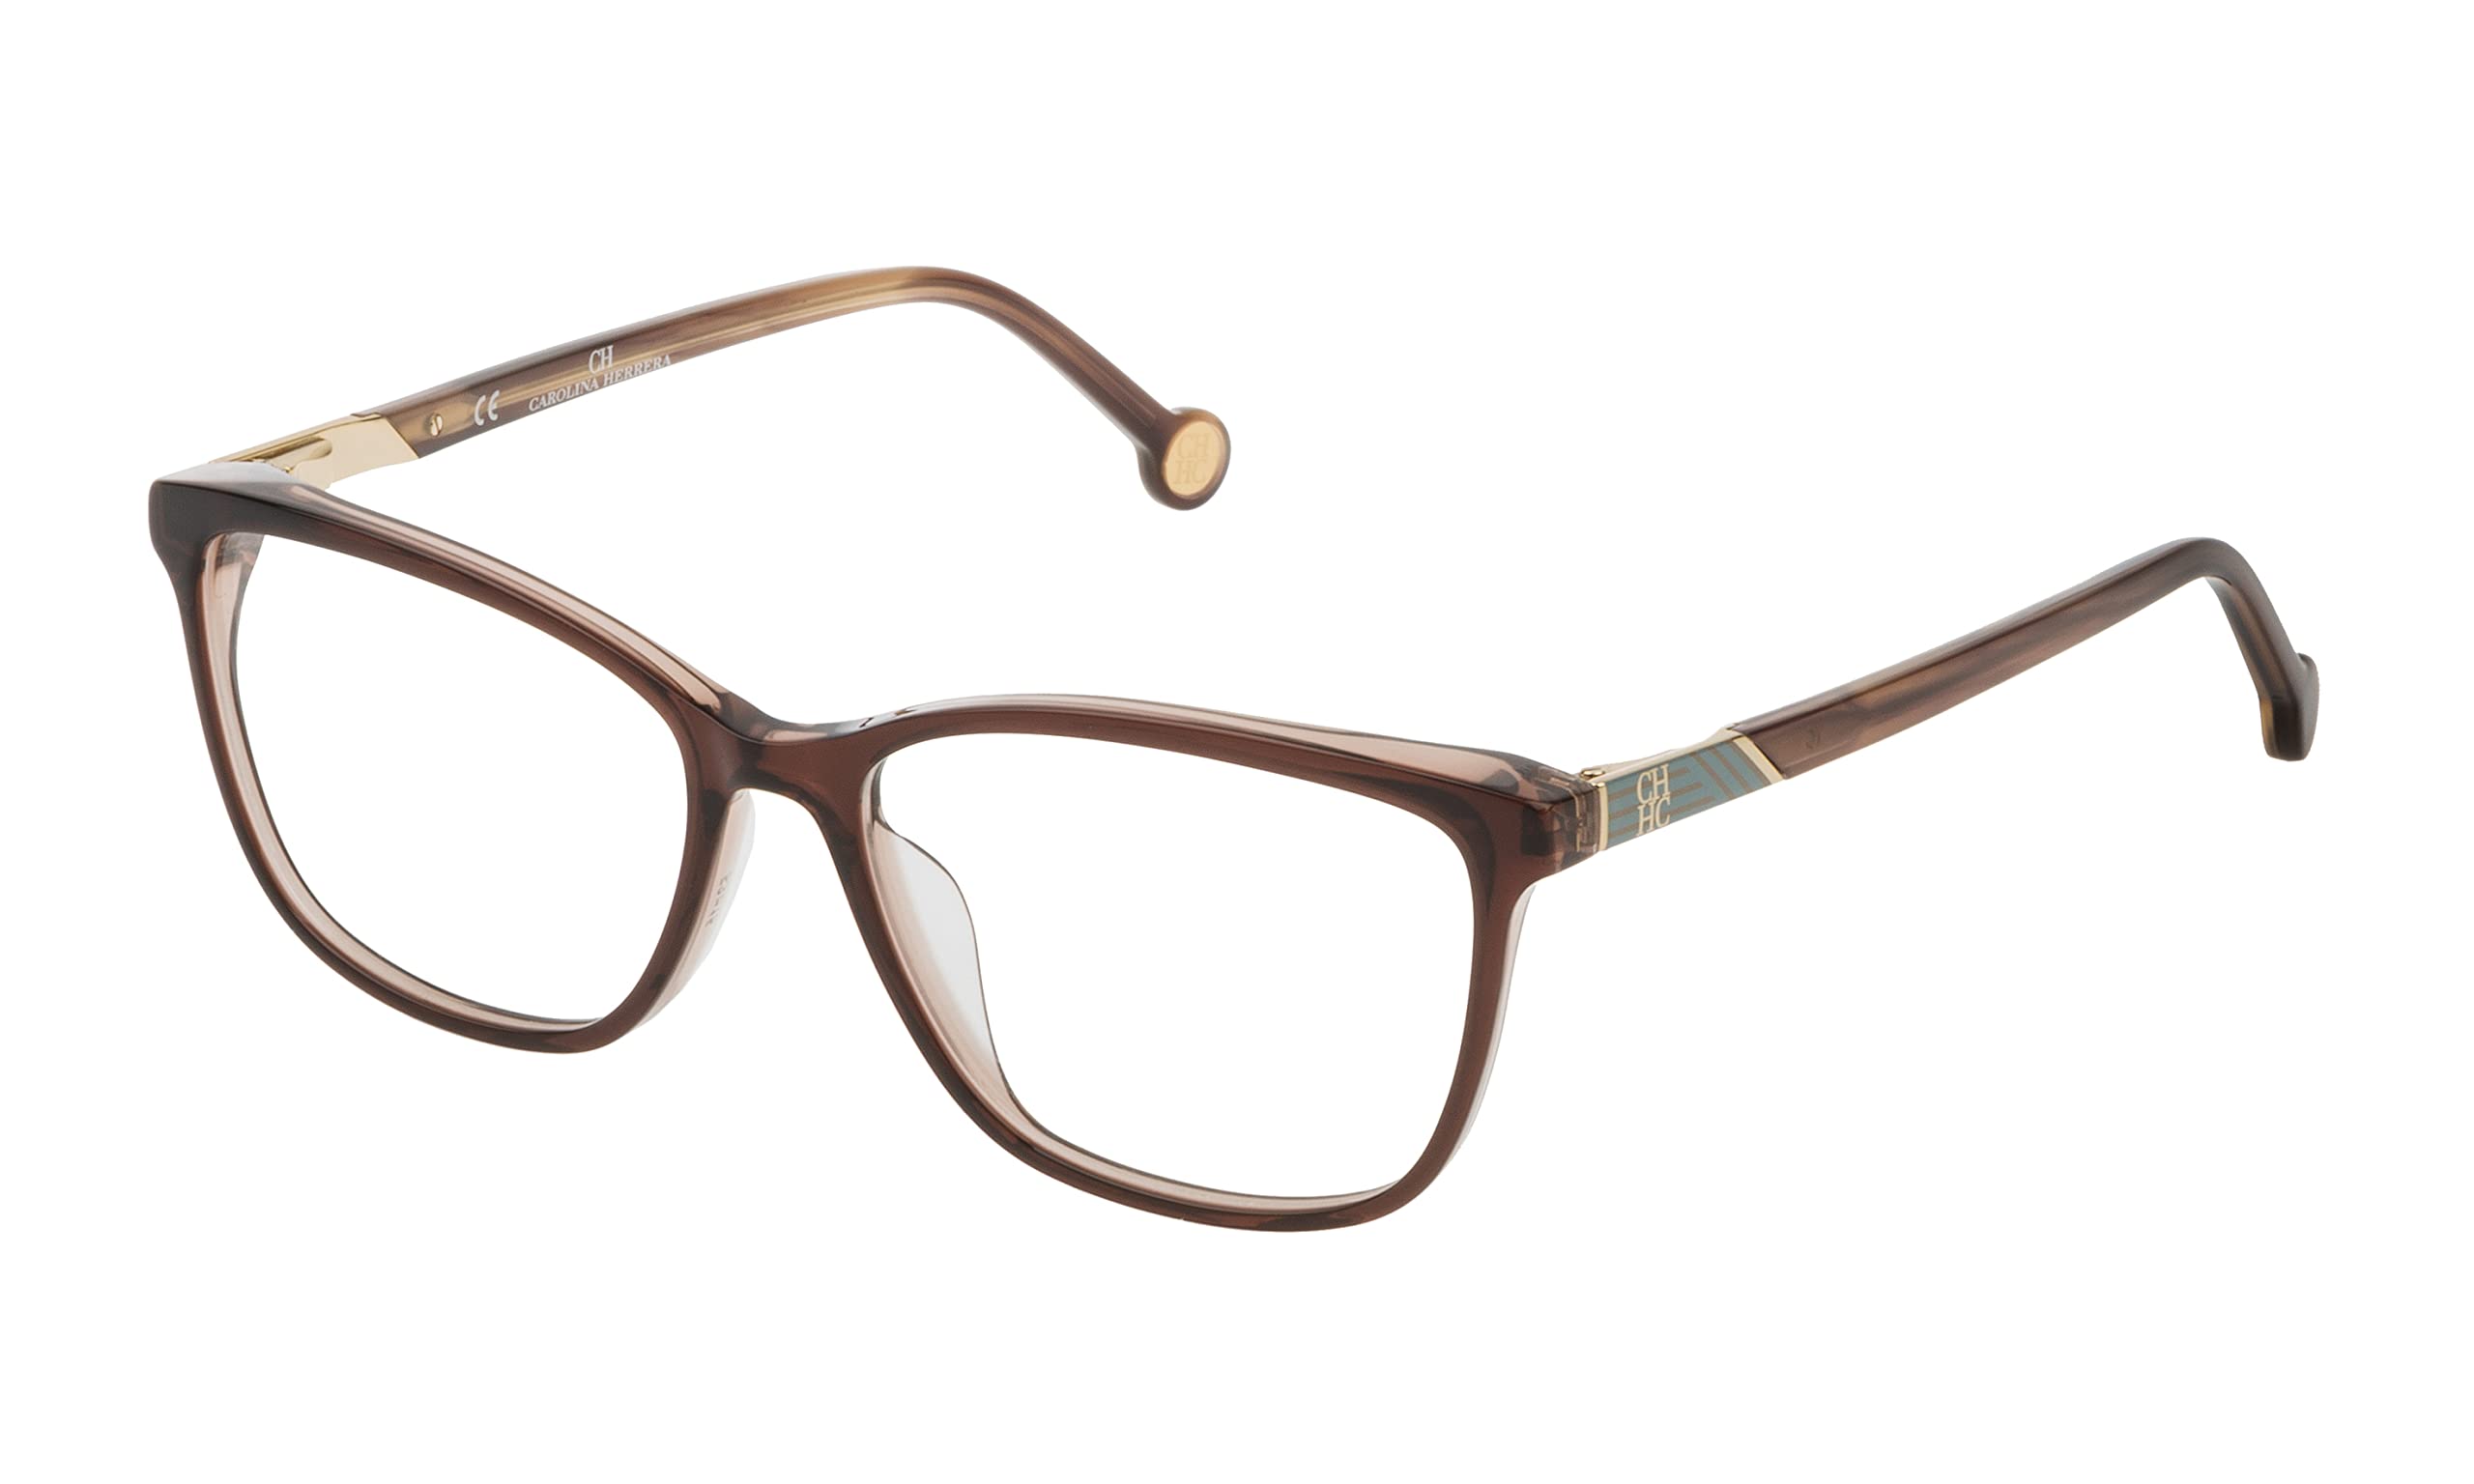 Carolina Herrera Unisex-Erwachsene Brillen VHE799, 0Z28, 53